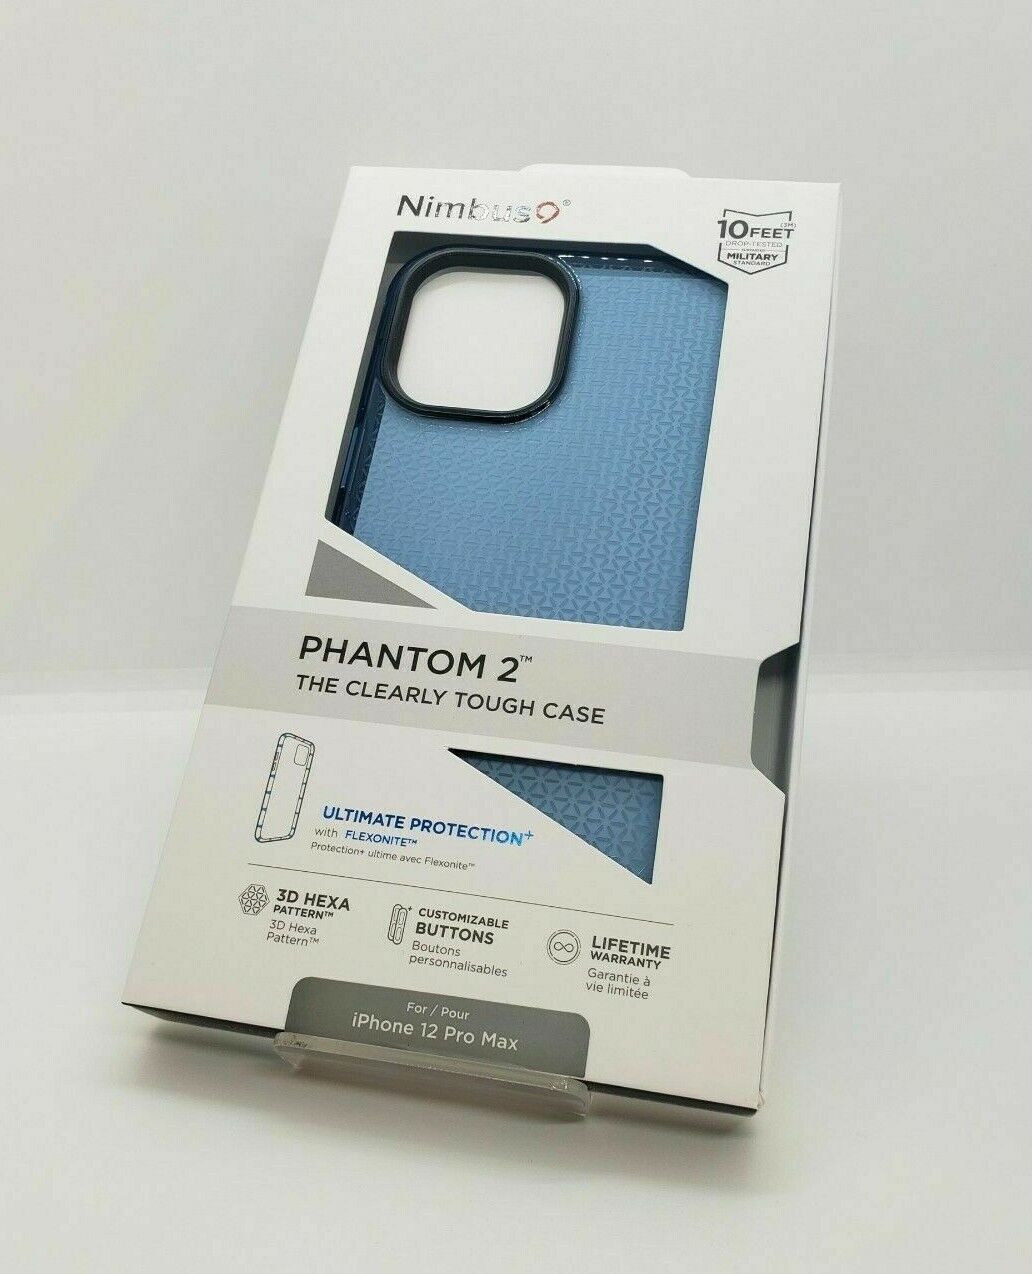 Nimbus 9 Phantom 2 & Vega Case for iPhone